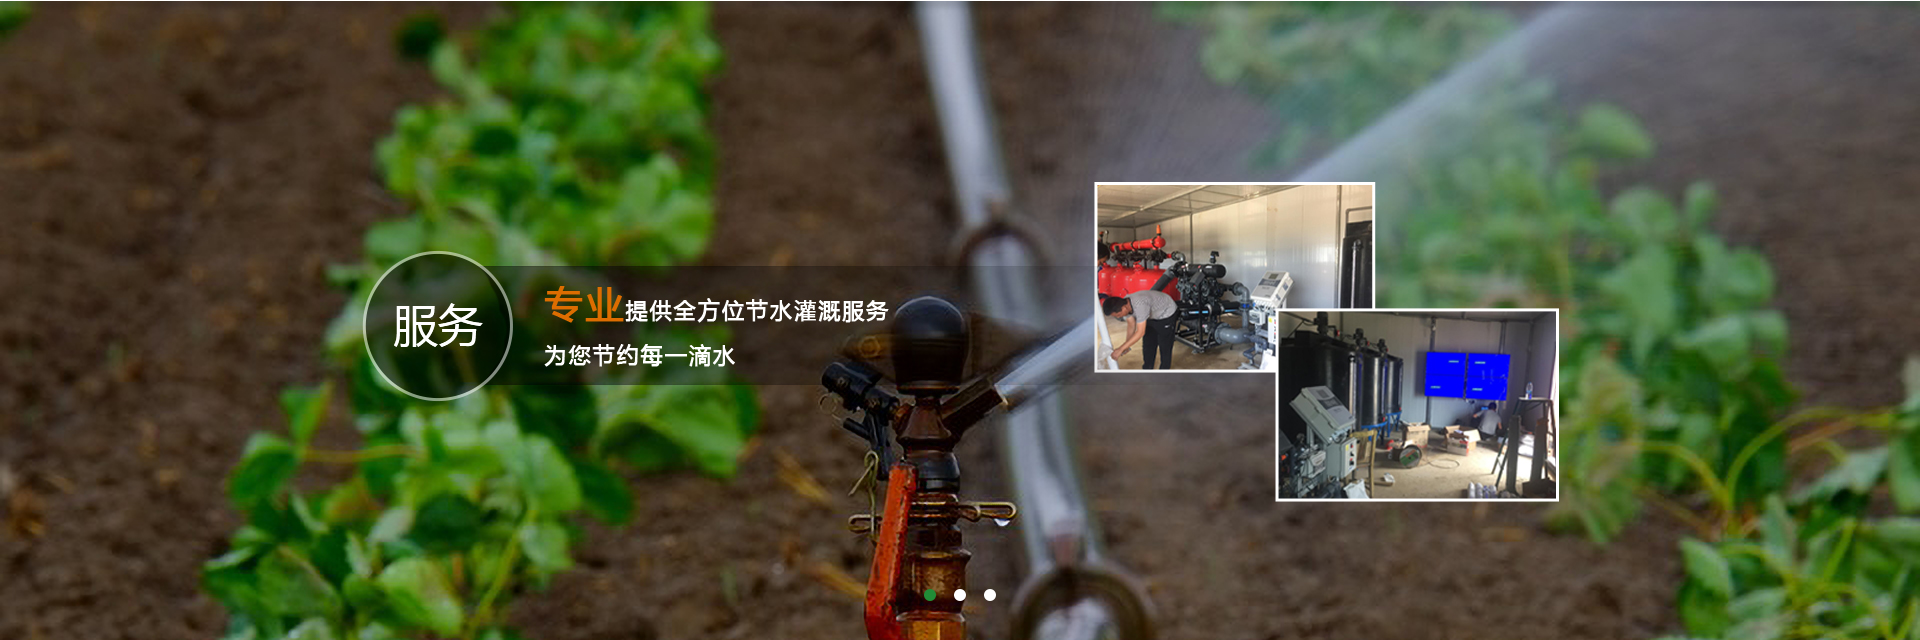 全(quan)自動灌溉